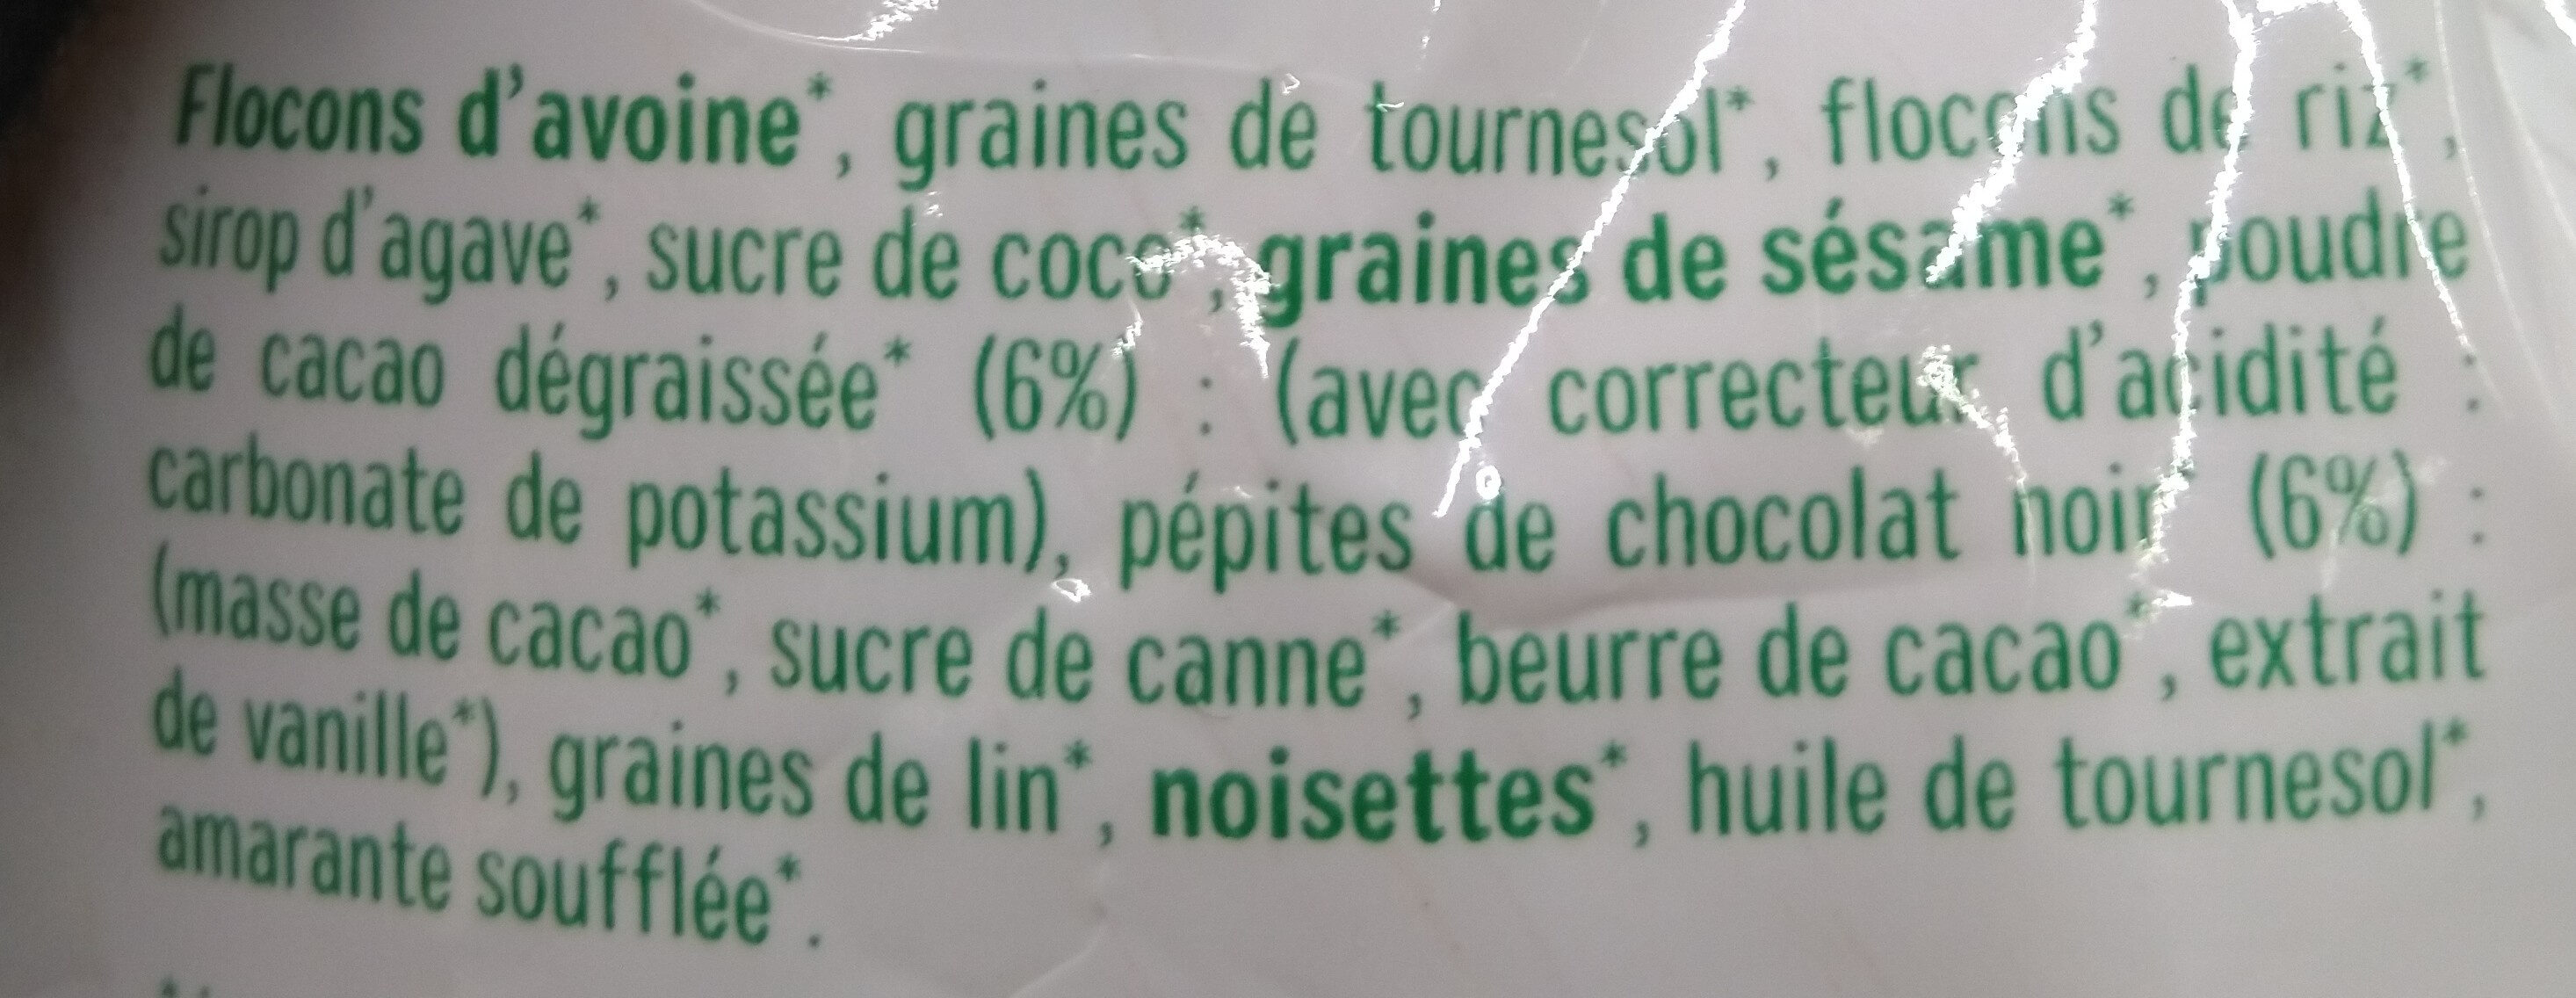 mes p'tites céréales bio amandes riz soufflé - Ingredients - fr